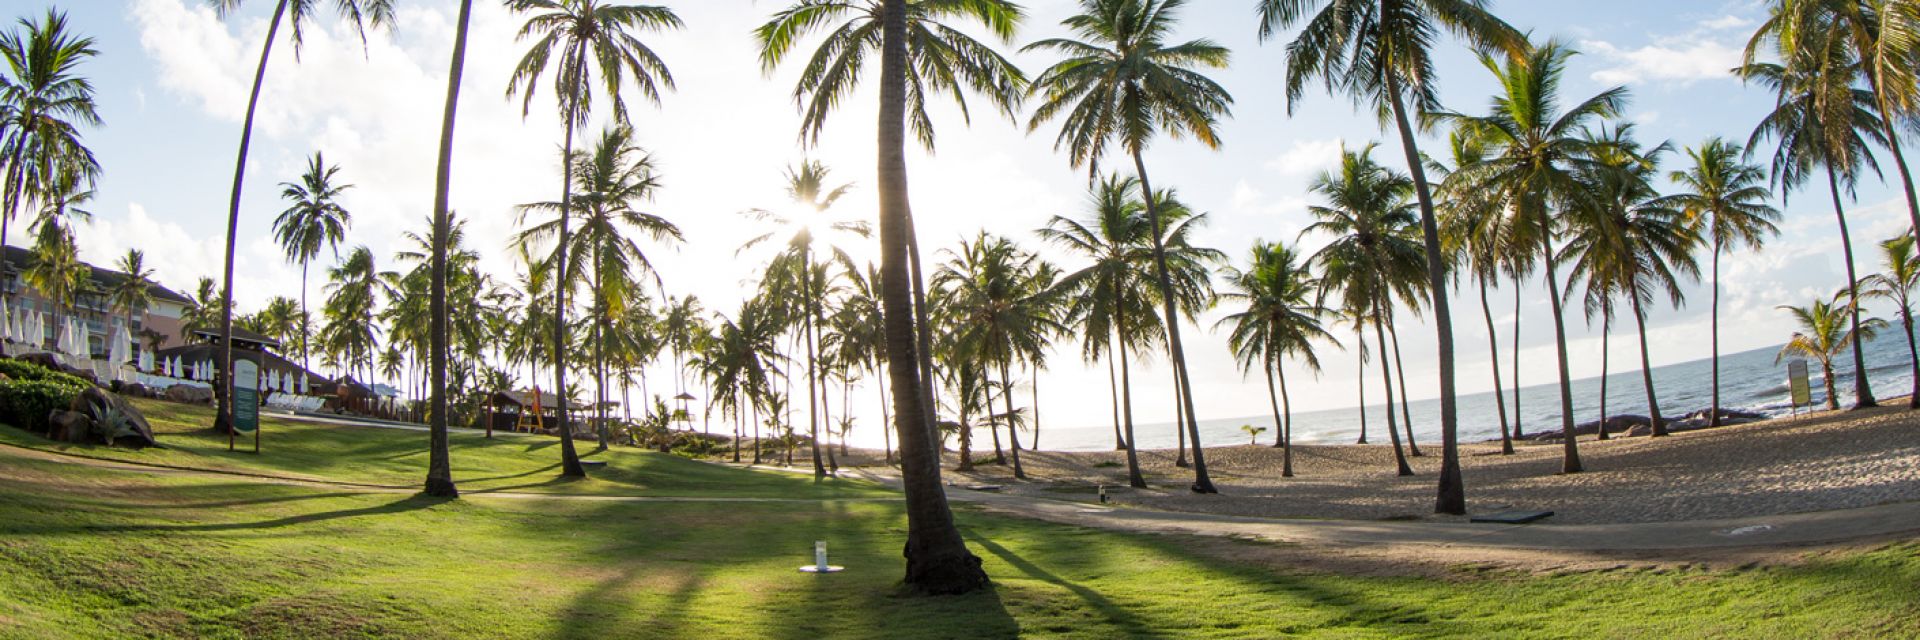 Top 5: conheça as melhores praias do Brasil